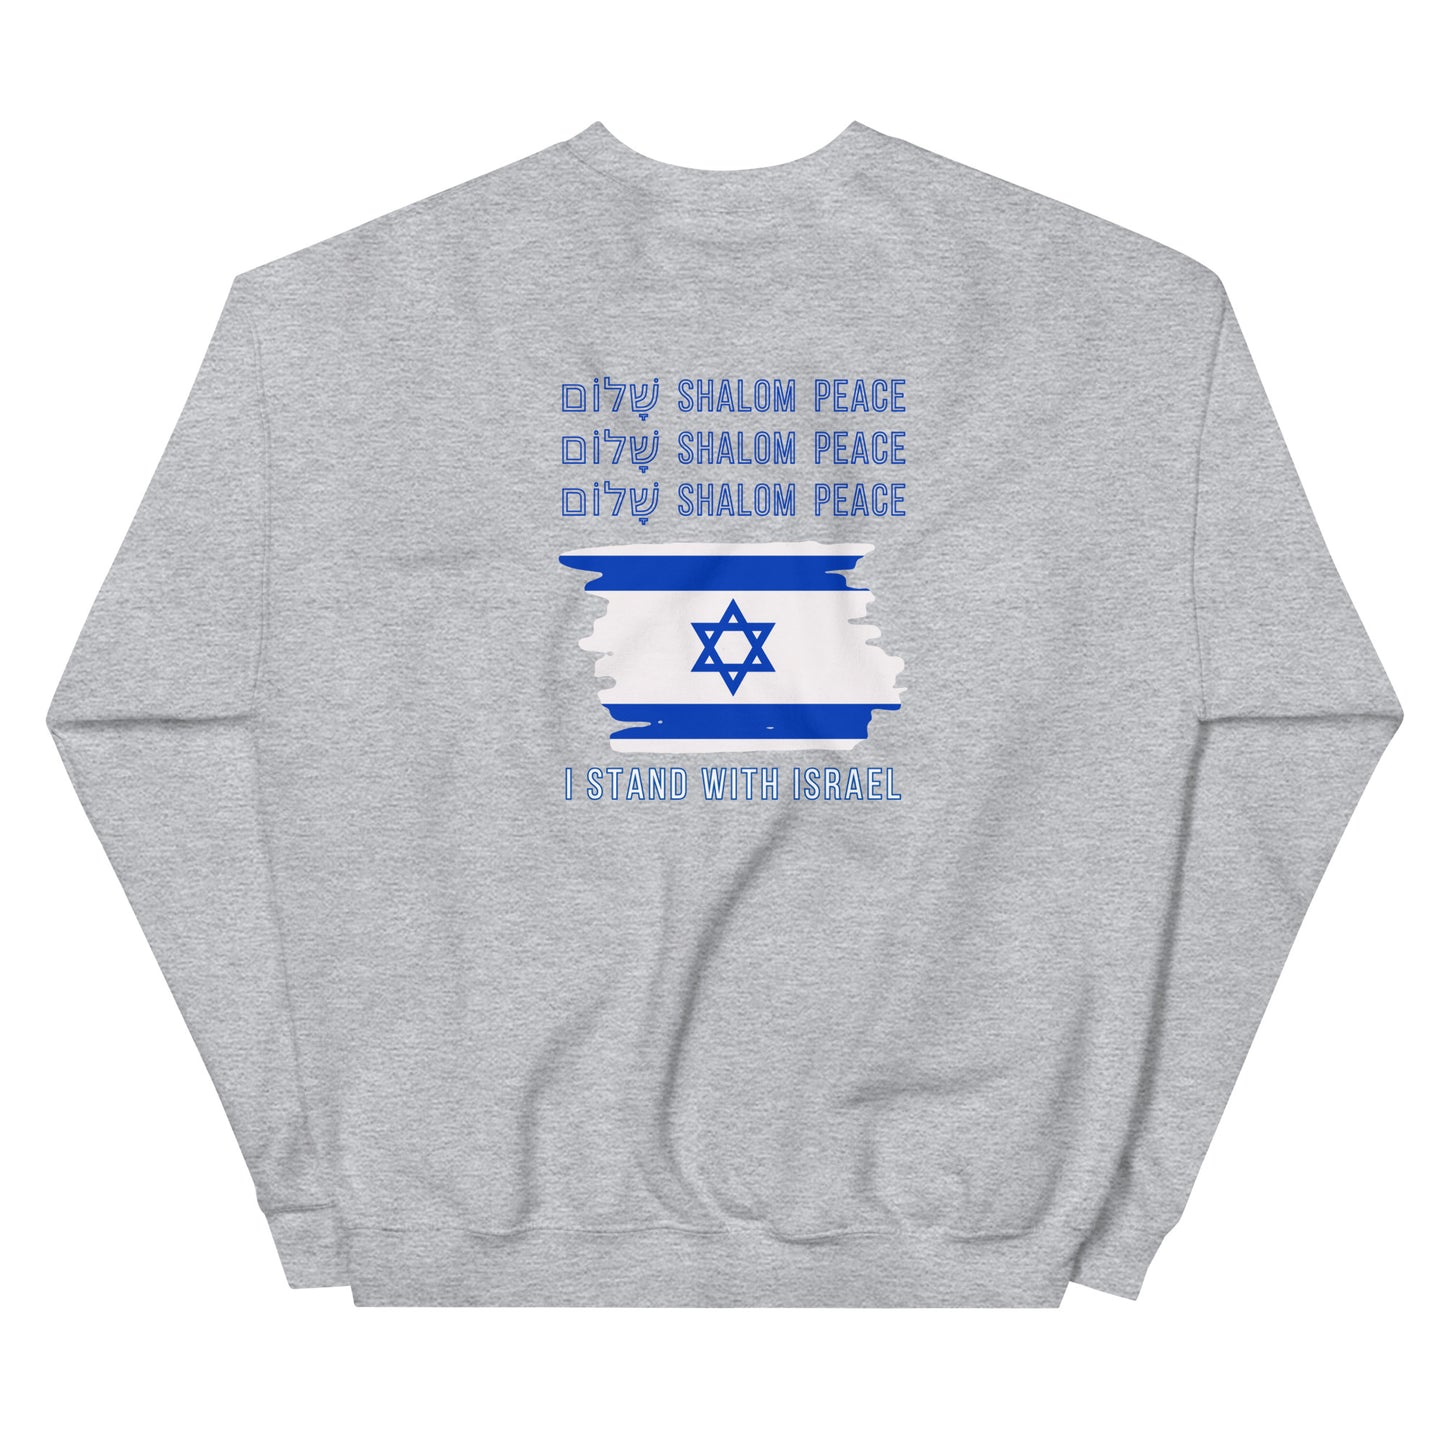 I STAND WITH ISRAEL - Unisex Sweatshirt